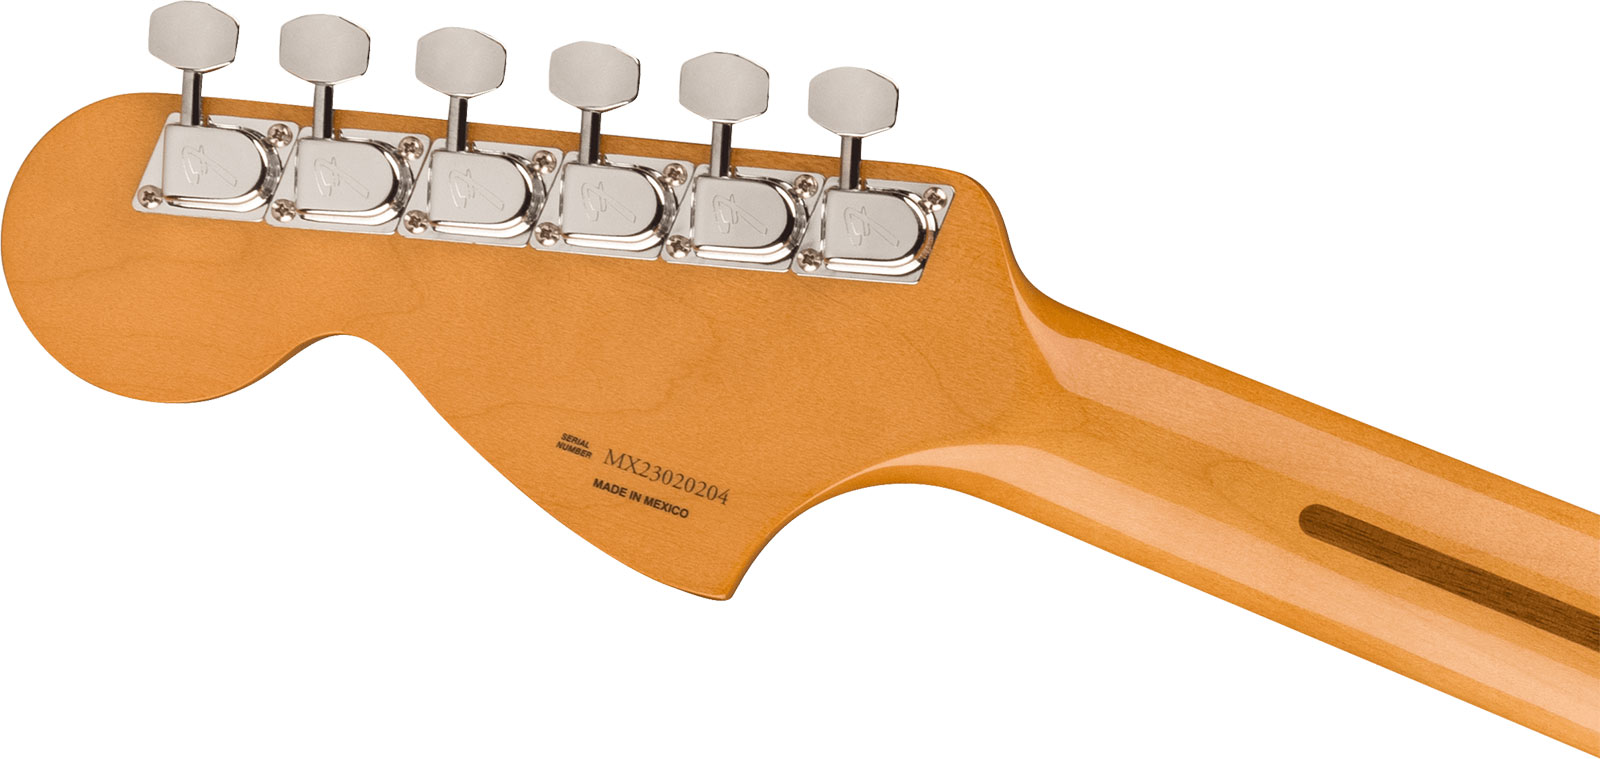 Fender Strat 70s Vintera 2 Mex 3s Trem Mn - Vintage White - Str shape electric guitar - Variation 3